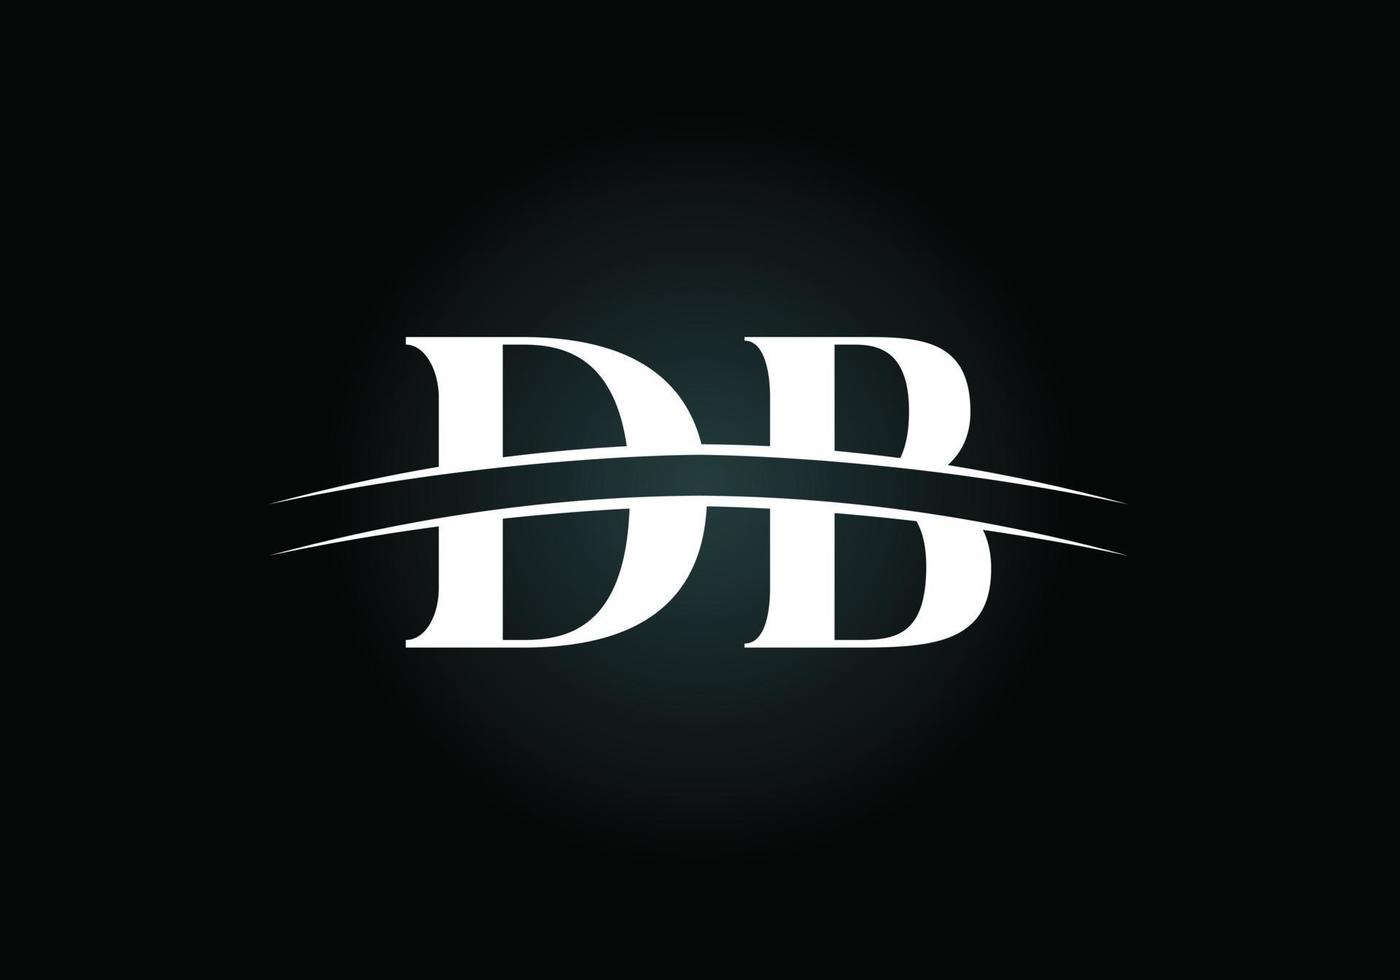 lettera iniziale db logo design vettoriale. simbolo grafico dell'alfabeto per l'identità aziendale vettore